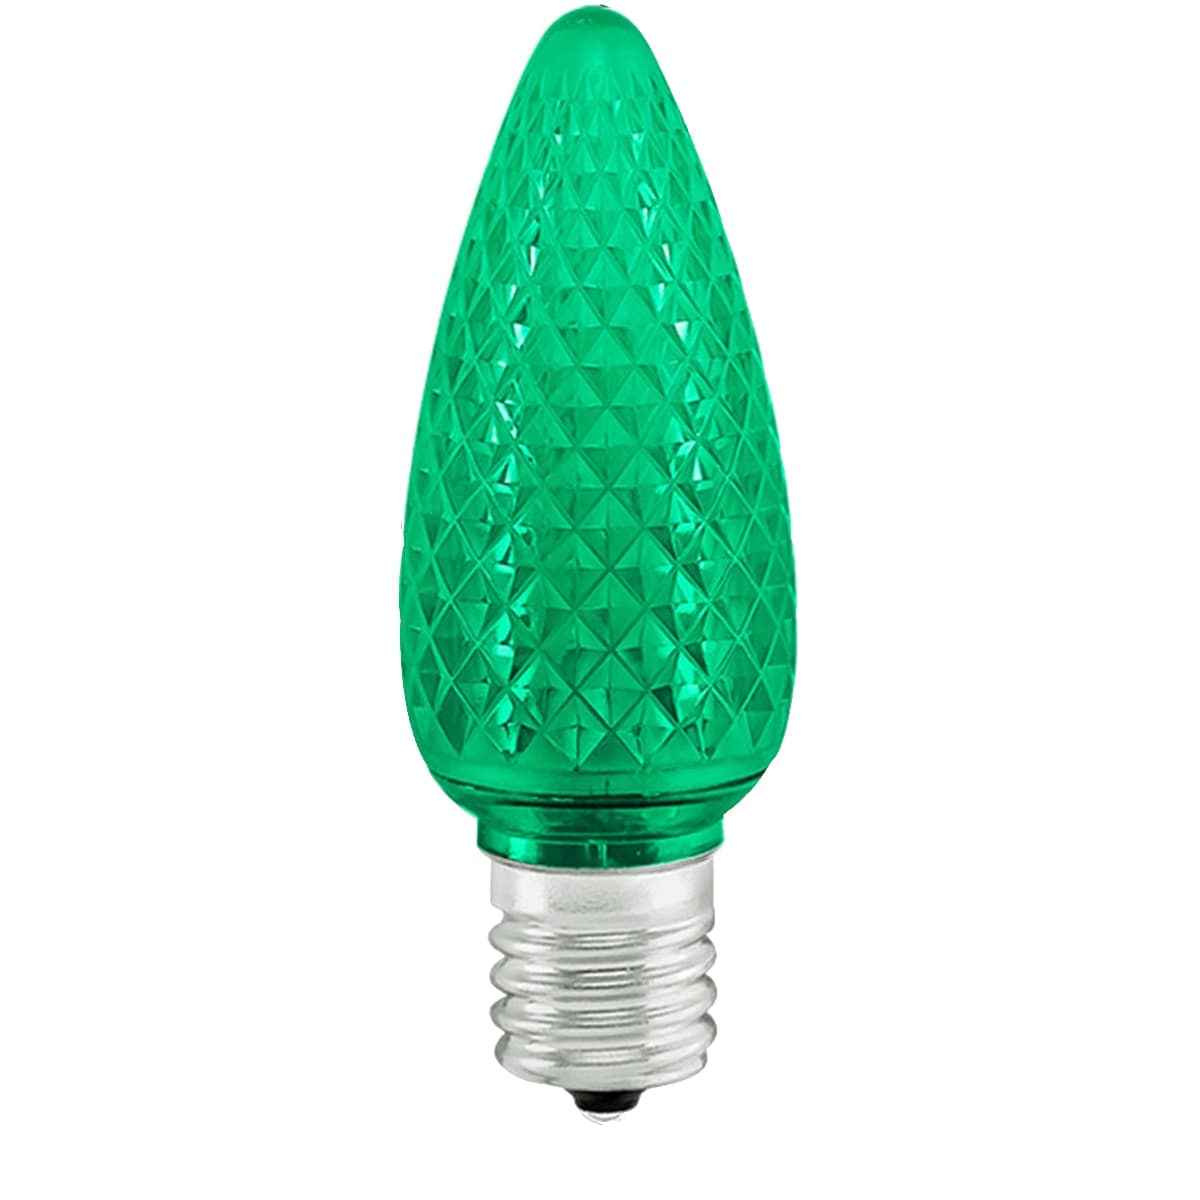 christmas-lighting-led-c9-bulb-green-faceted-st-nicks-CA